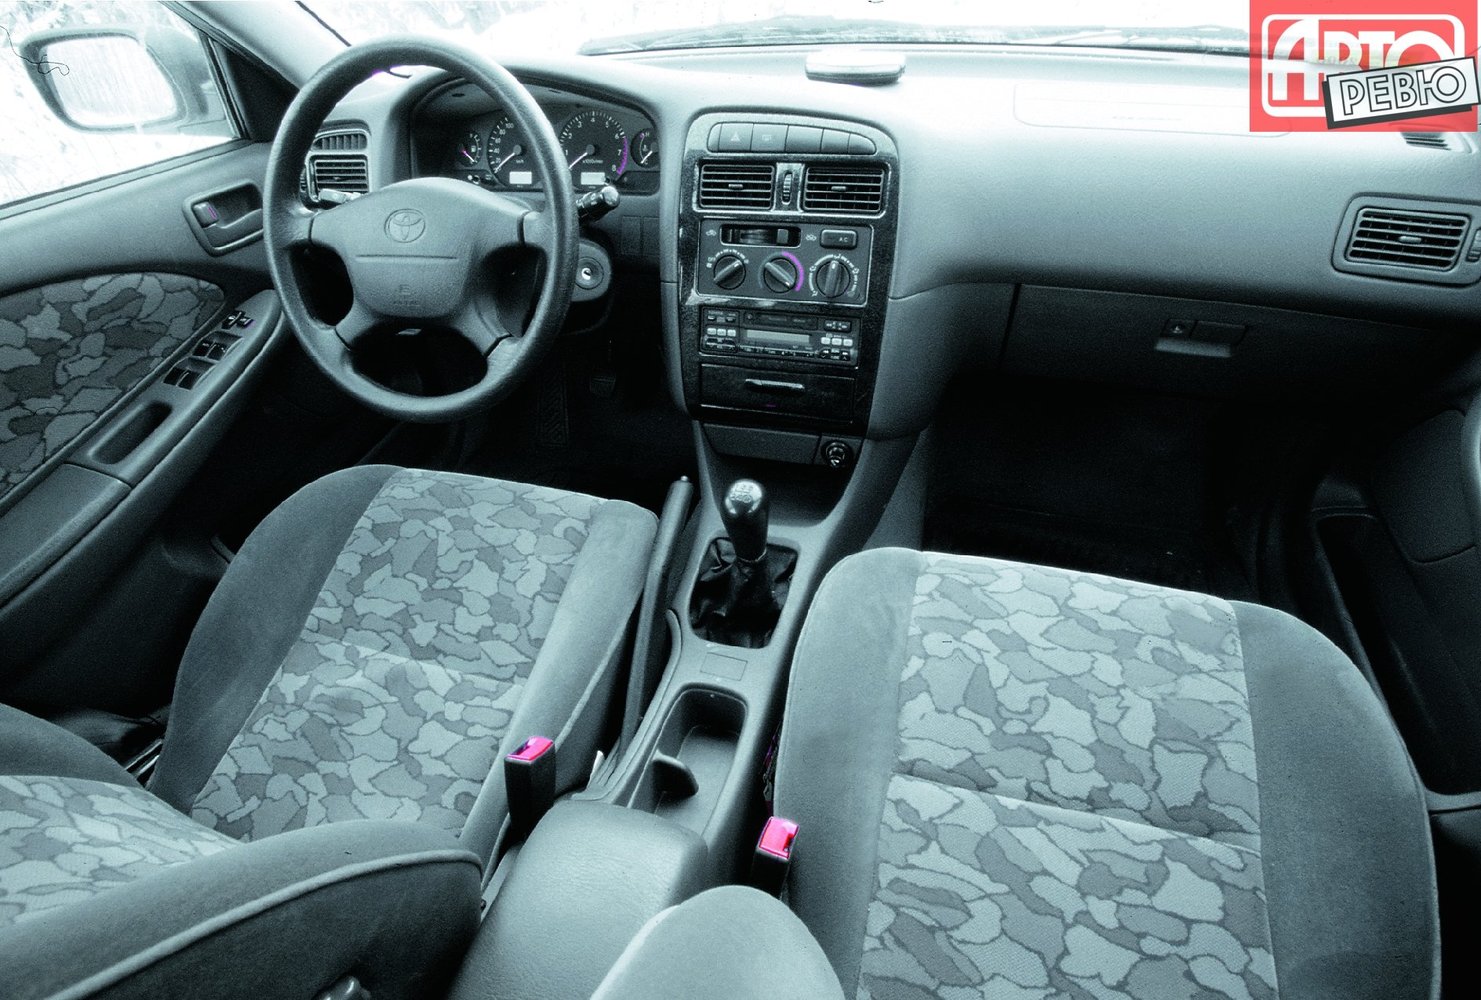 хэтчбек 5 дв. Toyota Avensis 1997 - 2000г выпуска модификация 1.6 MT (101 л.с.)